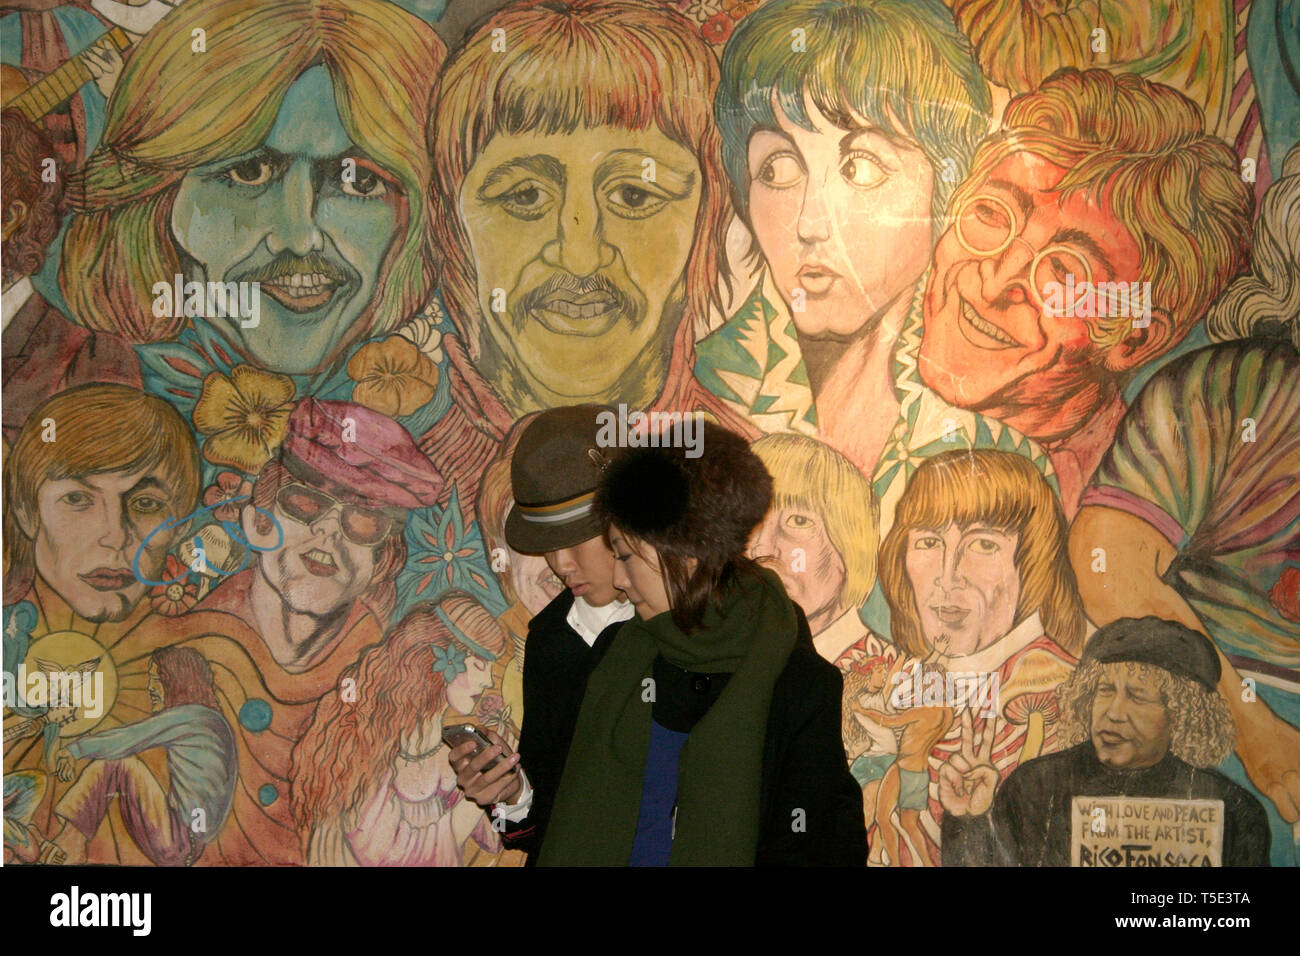 Jeune couple en face de musiciens célèbres' wall mural par Rico Fonseca à Greenwich Village, New York, USA Banque D'Images